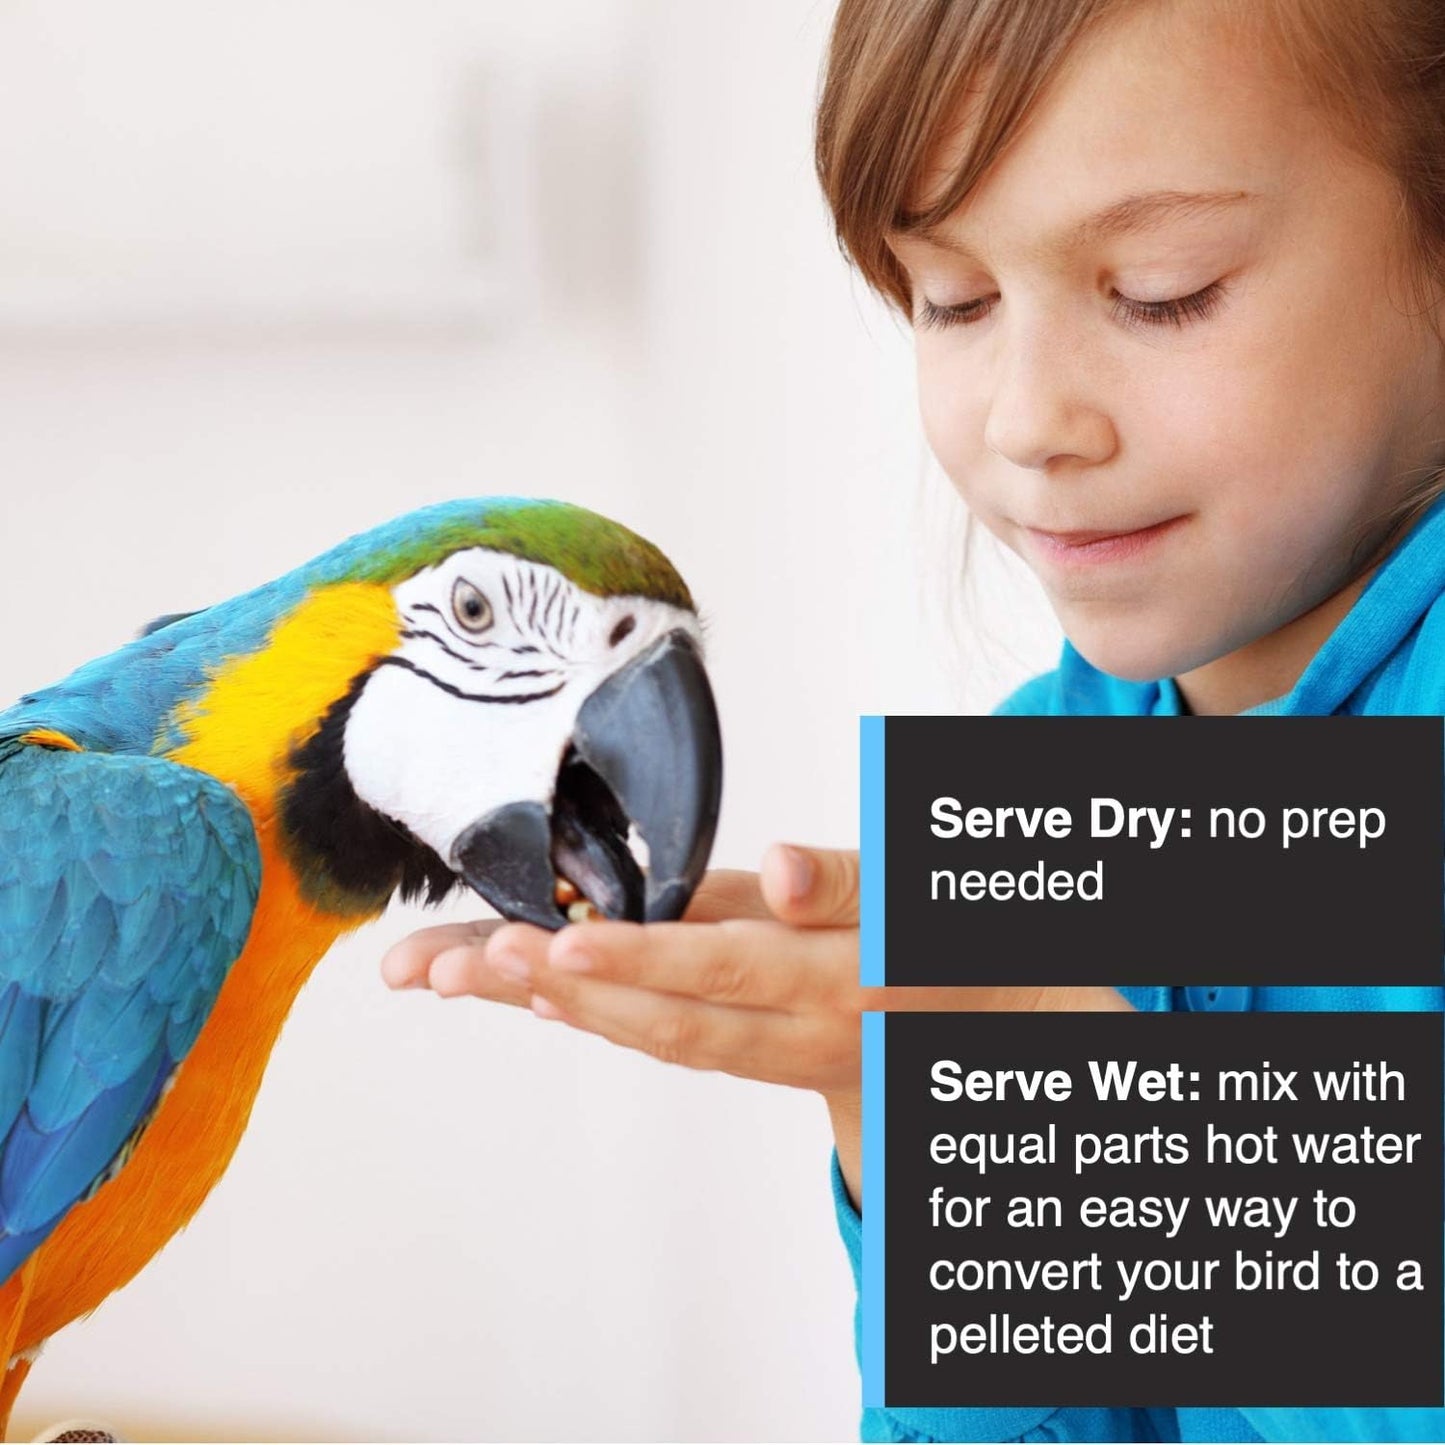 HARI Tropimix Enrichment Food for Large Parrots